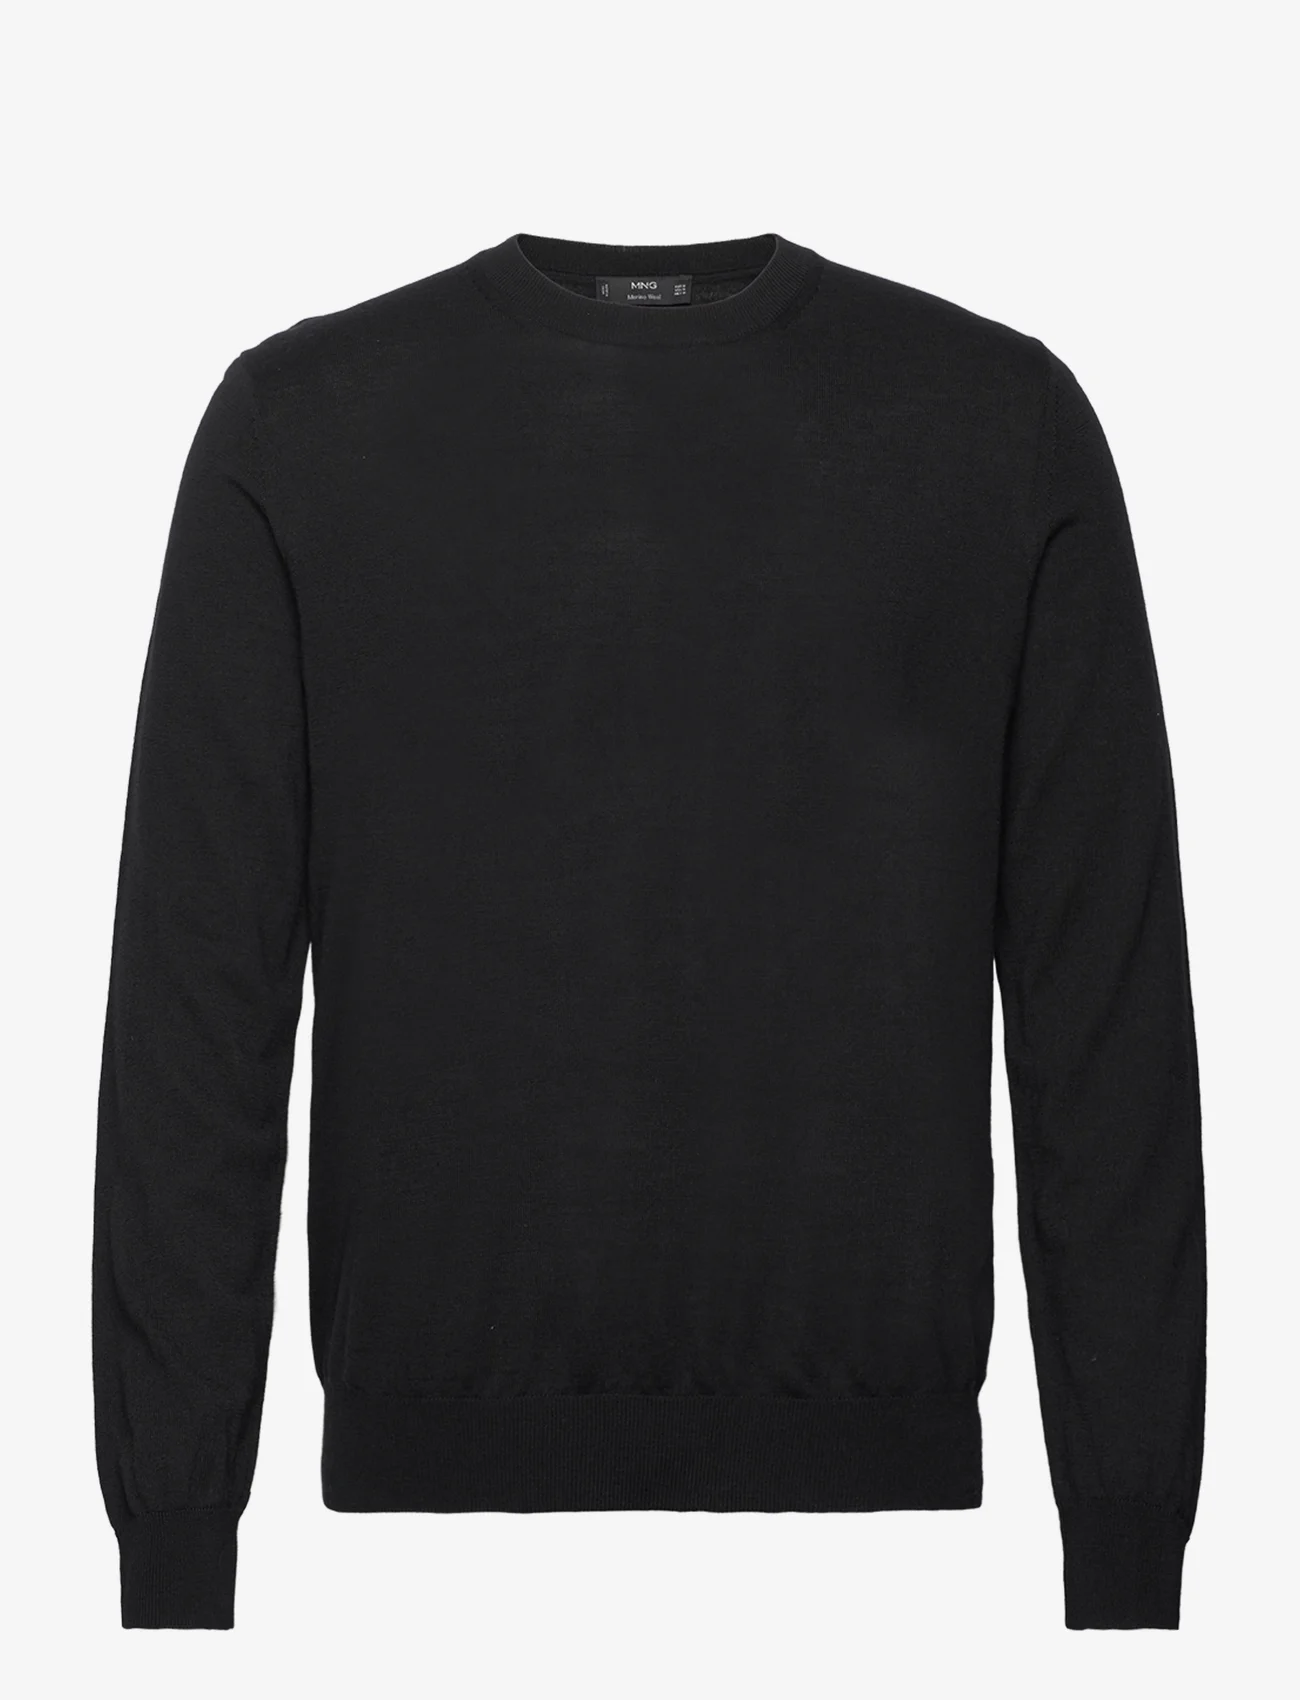 Mango - Merino wool washable sweater - strik med rund hals - black - 0